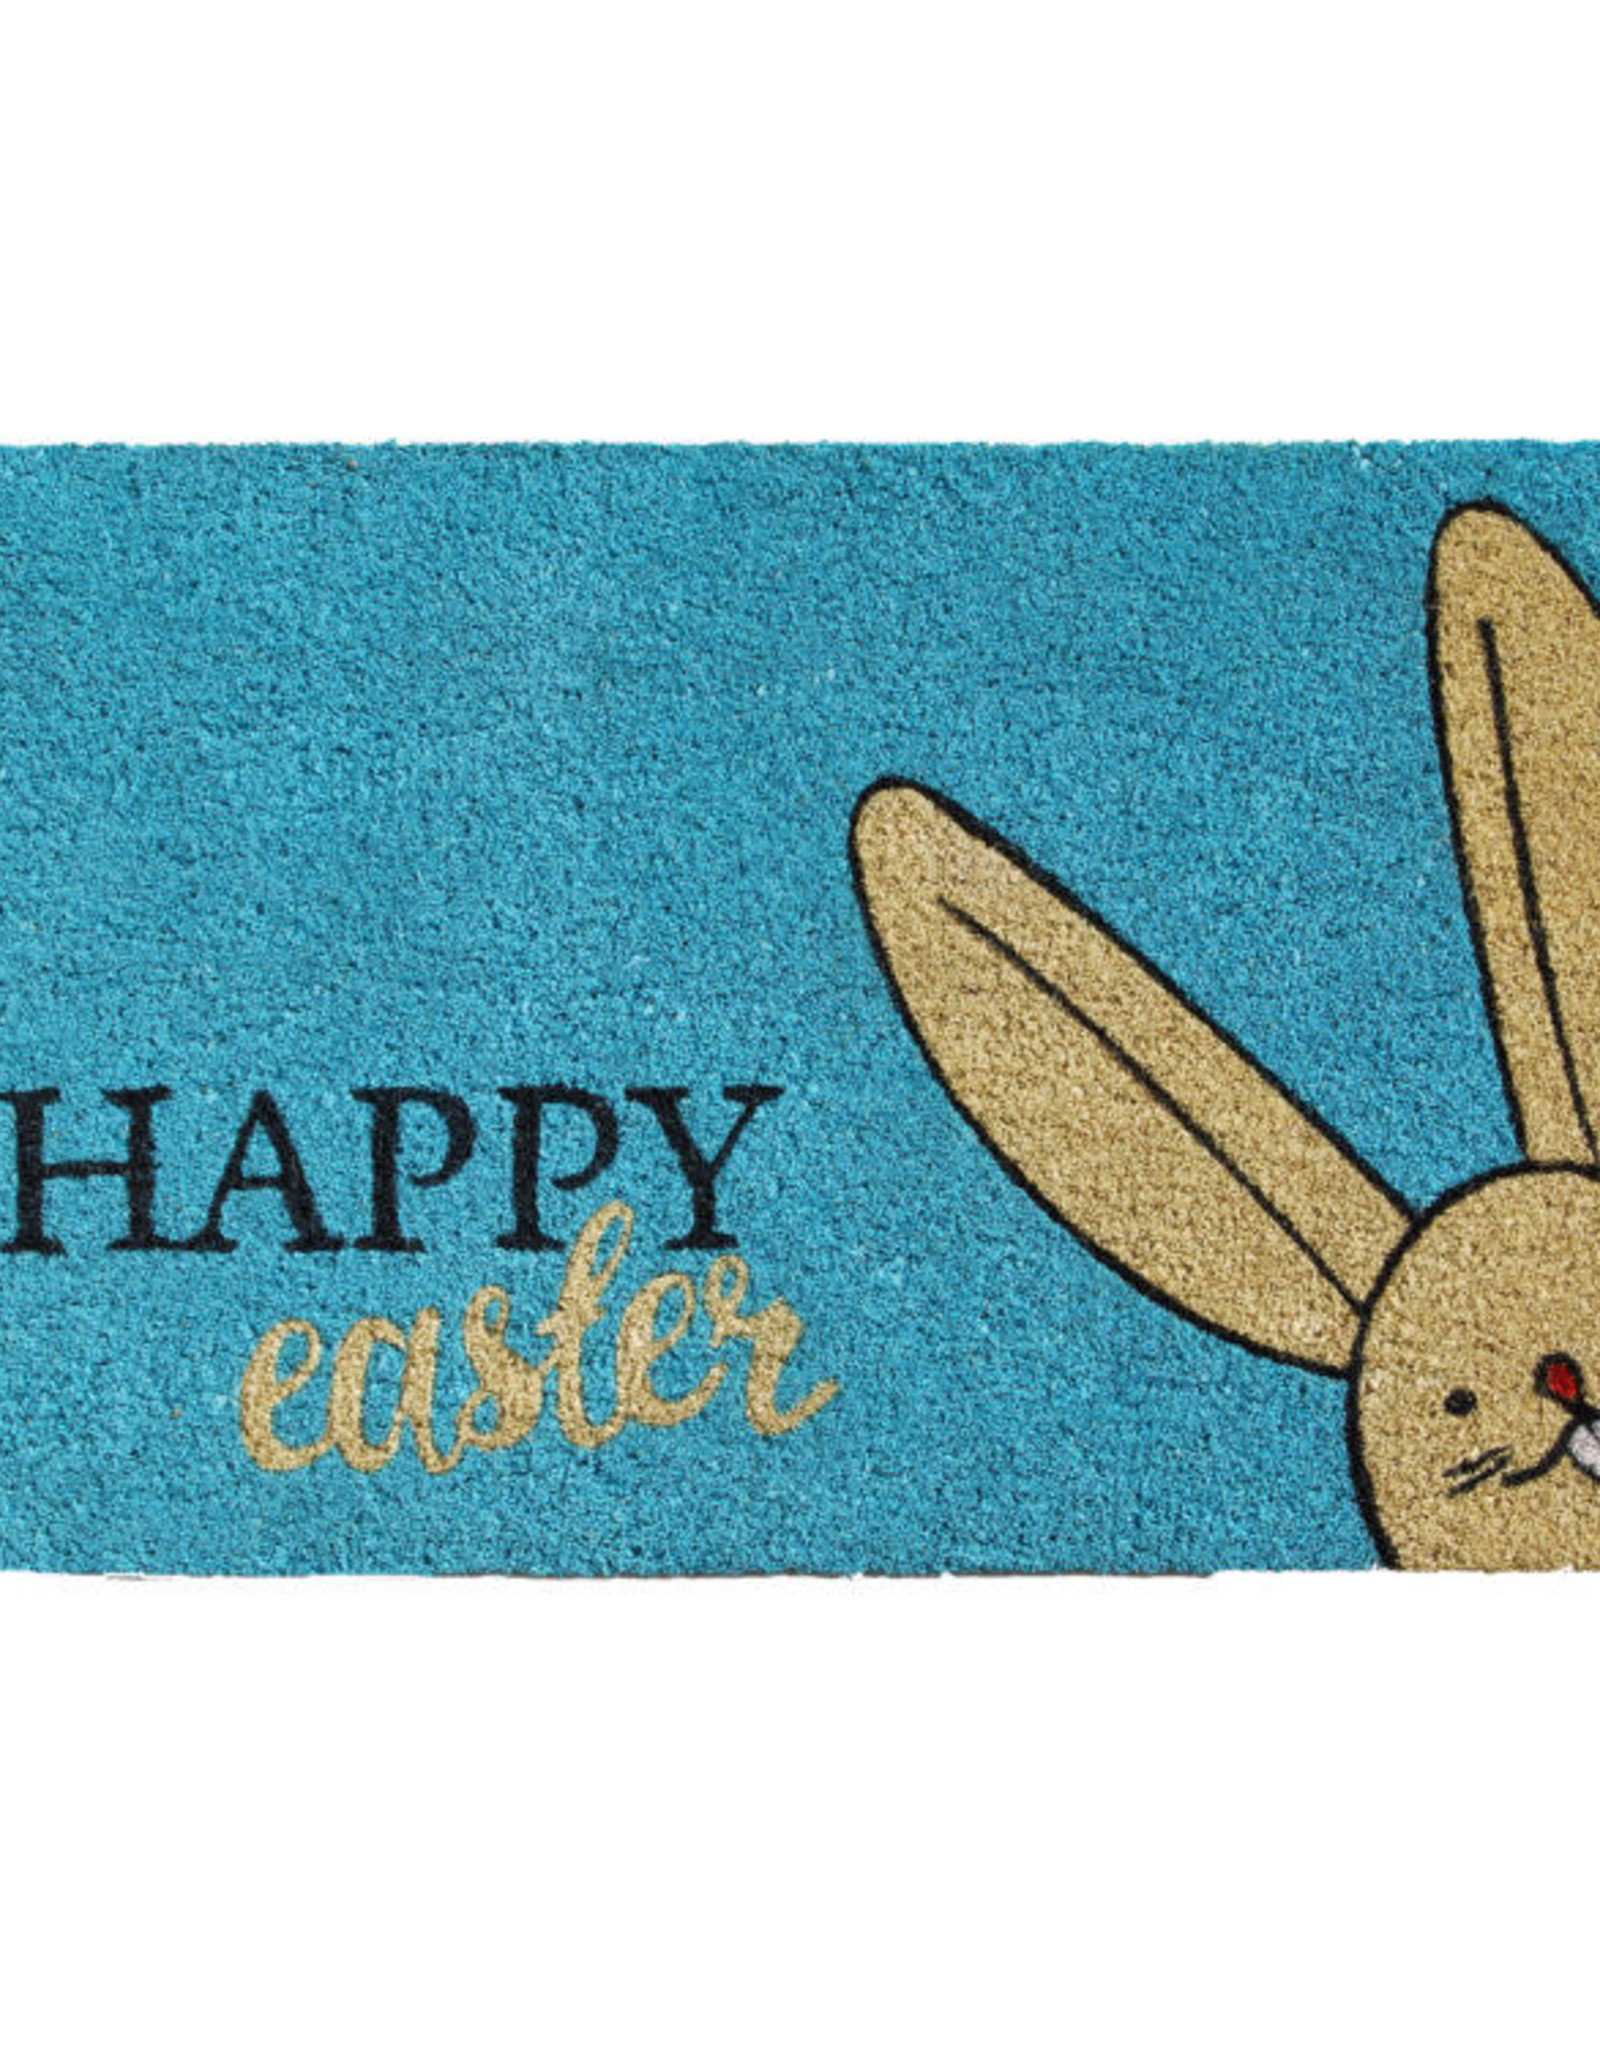 Happy Easter Doormat 17" x 29"